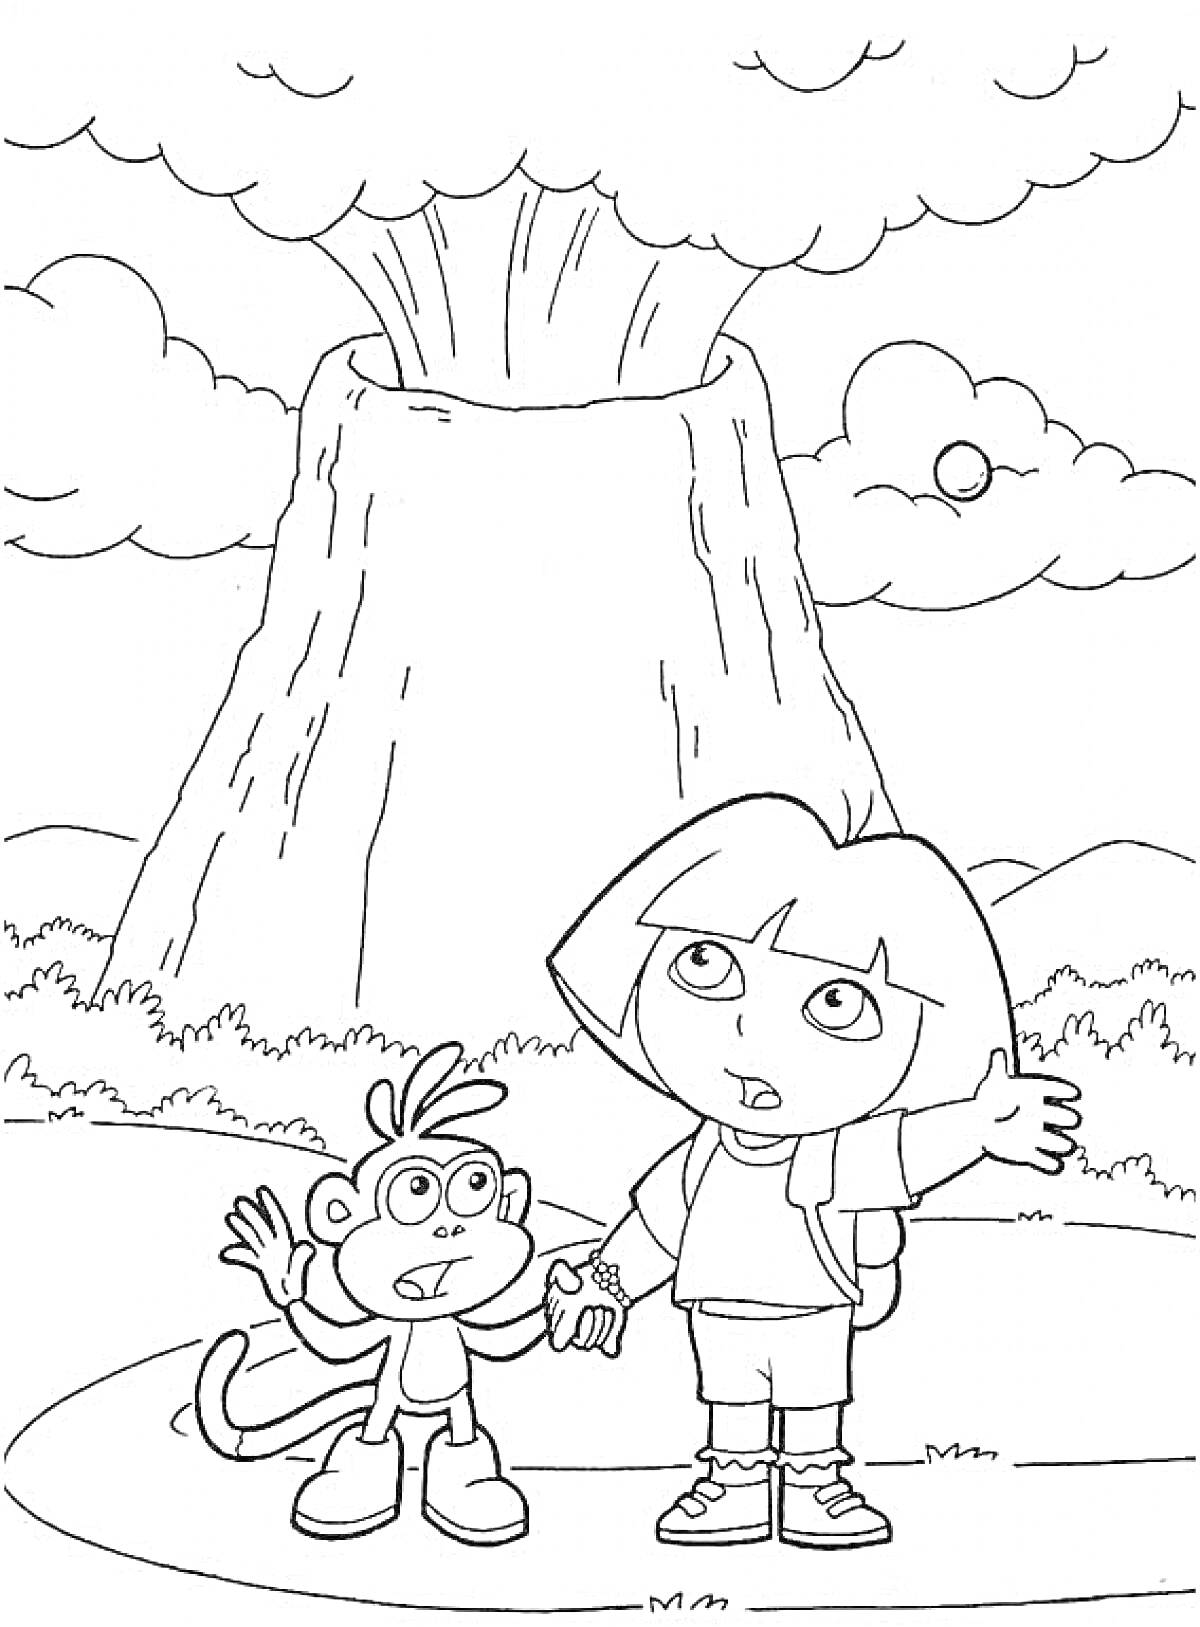  Вулкан, девочка с рюкзаком показывает на вулкан, обезьянка с рюкзаком стоит рядом, облака и ландшафт на фоне